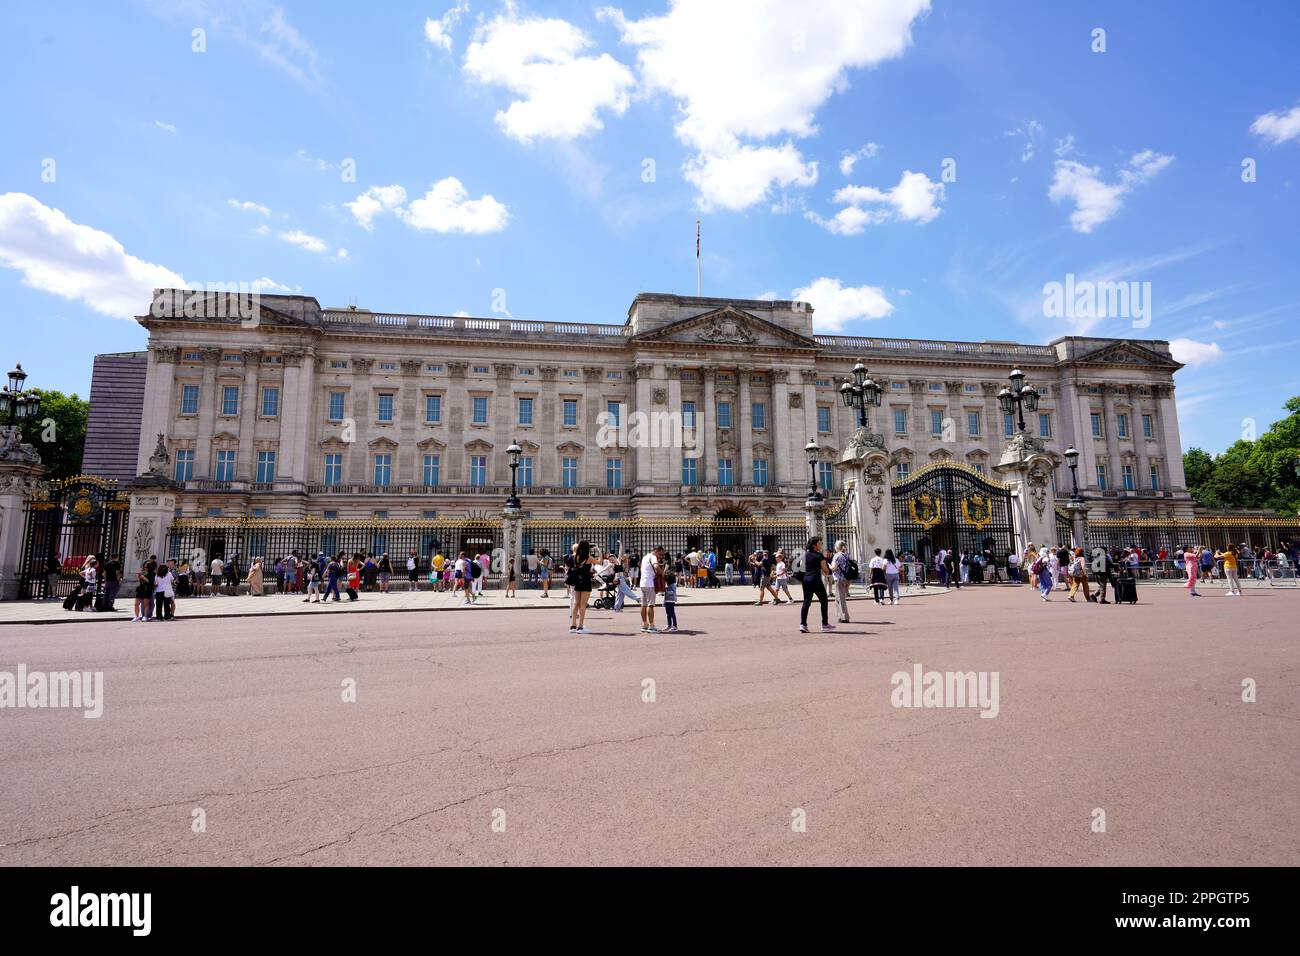 LONDRES, REINO UNIDO - 15 DE JULIO de 2022: El Palacio de Buckingham es una residencia real de Londres y la sede administrativa del monarca del Reino Unido Foto de stock